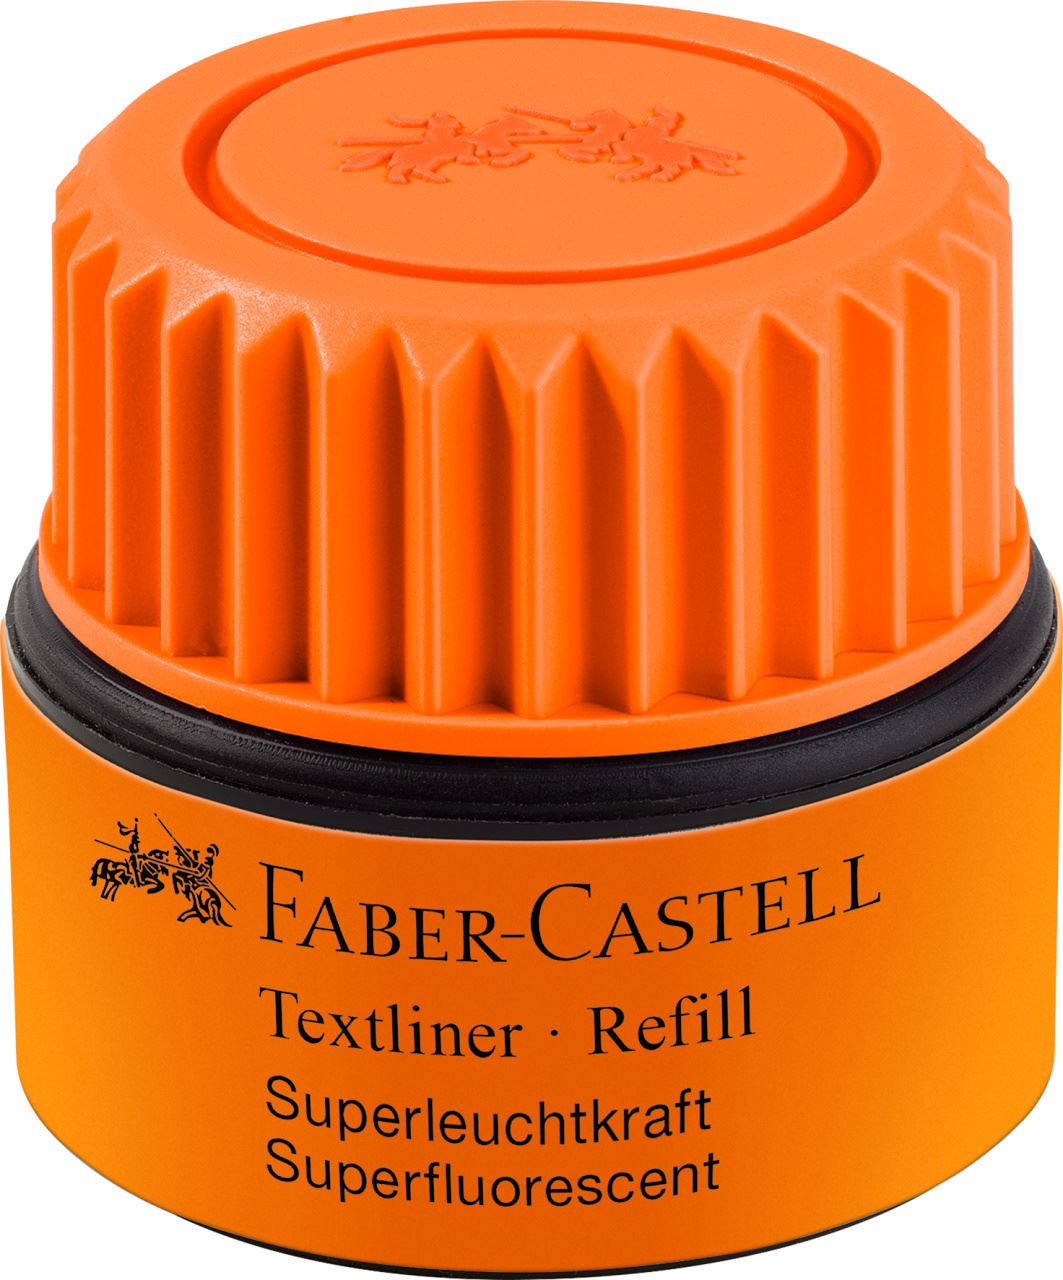 Faber-Castell - Tintero Textliner 1549, naranja